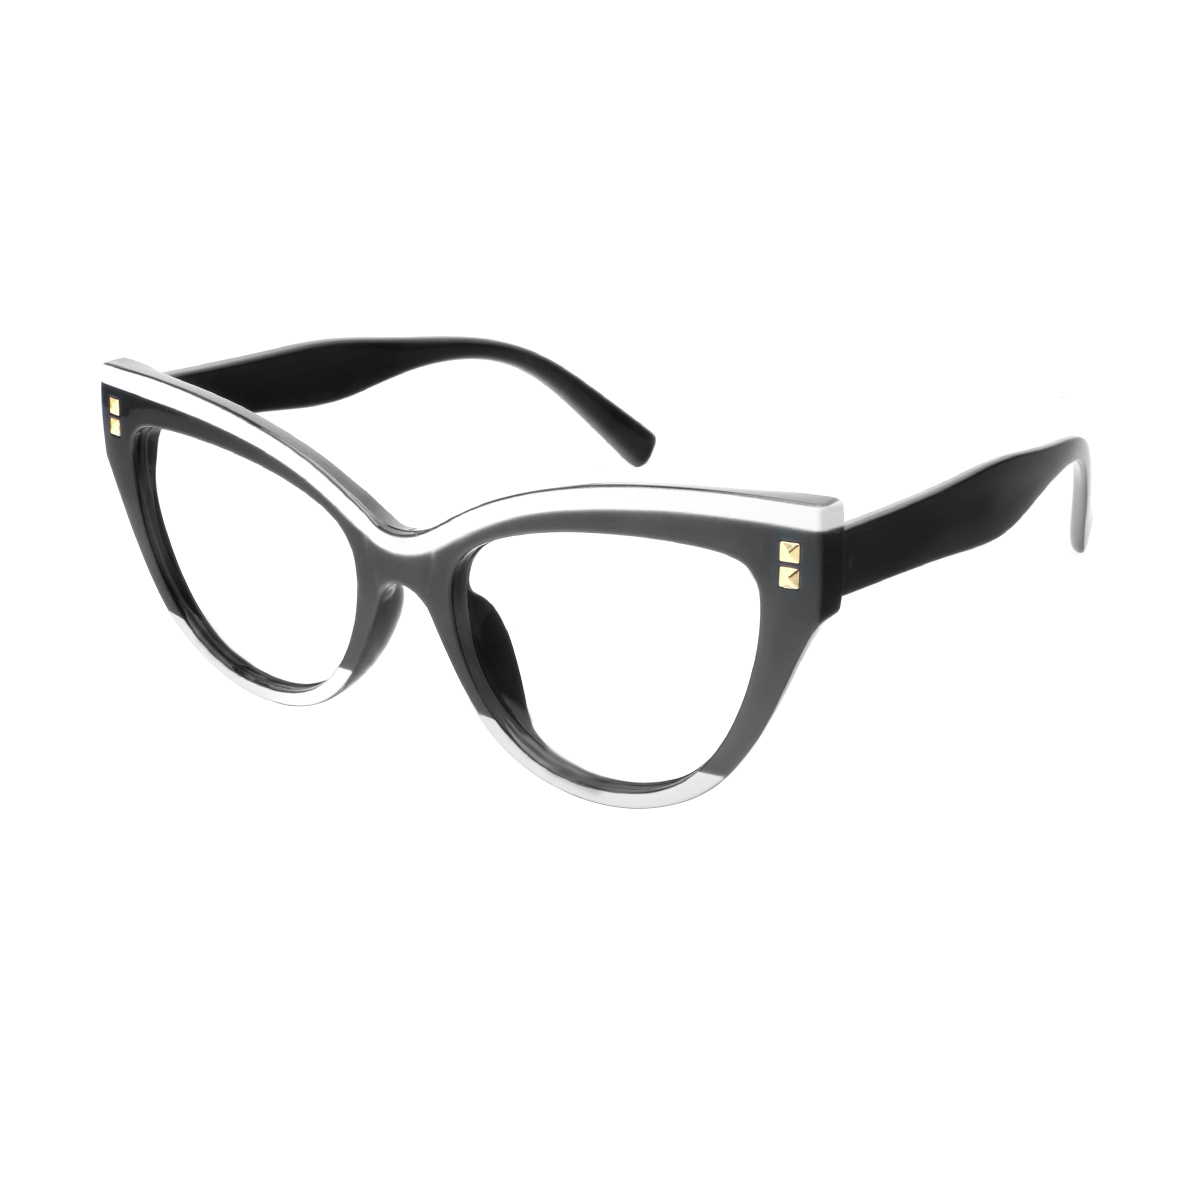 Alpeni - Cat-eye Black-White Reading Glasses for Women